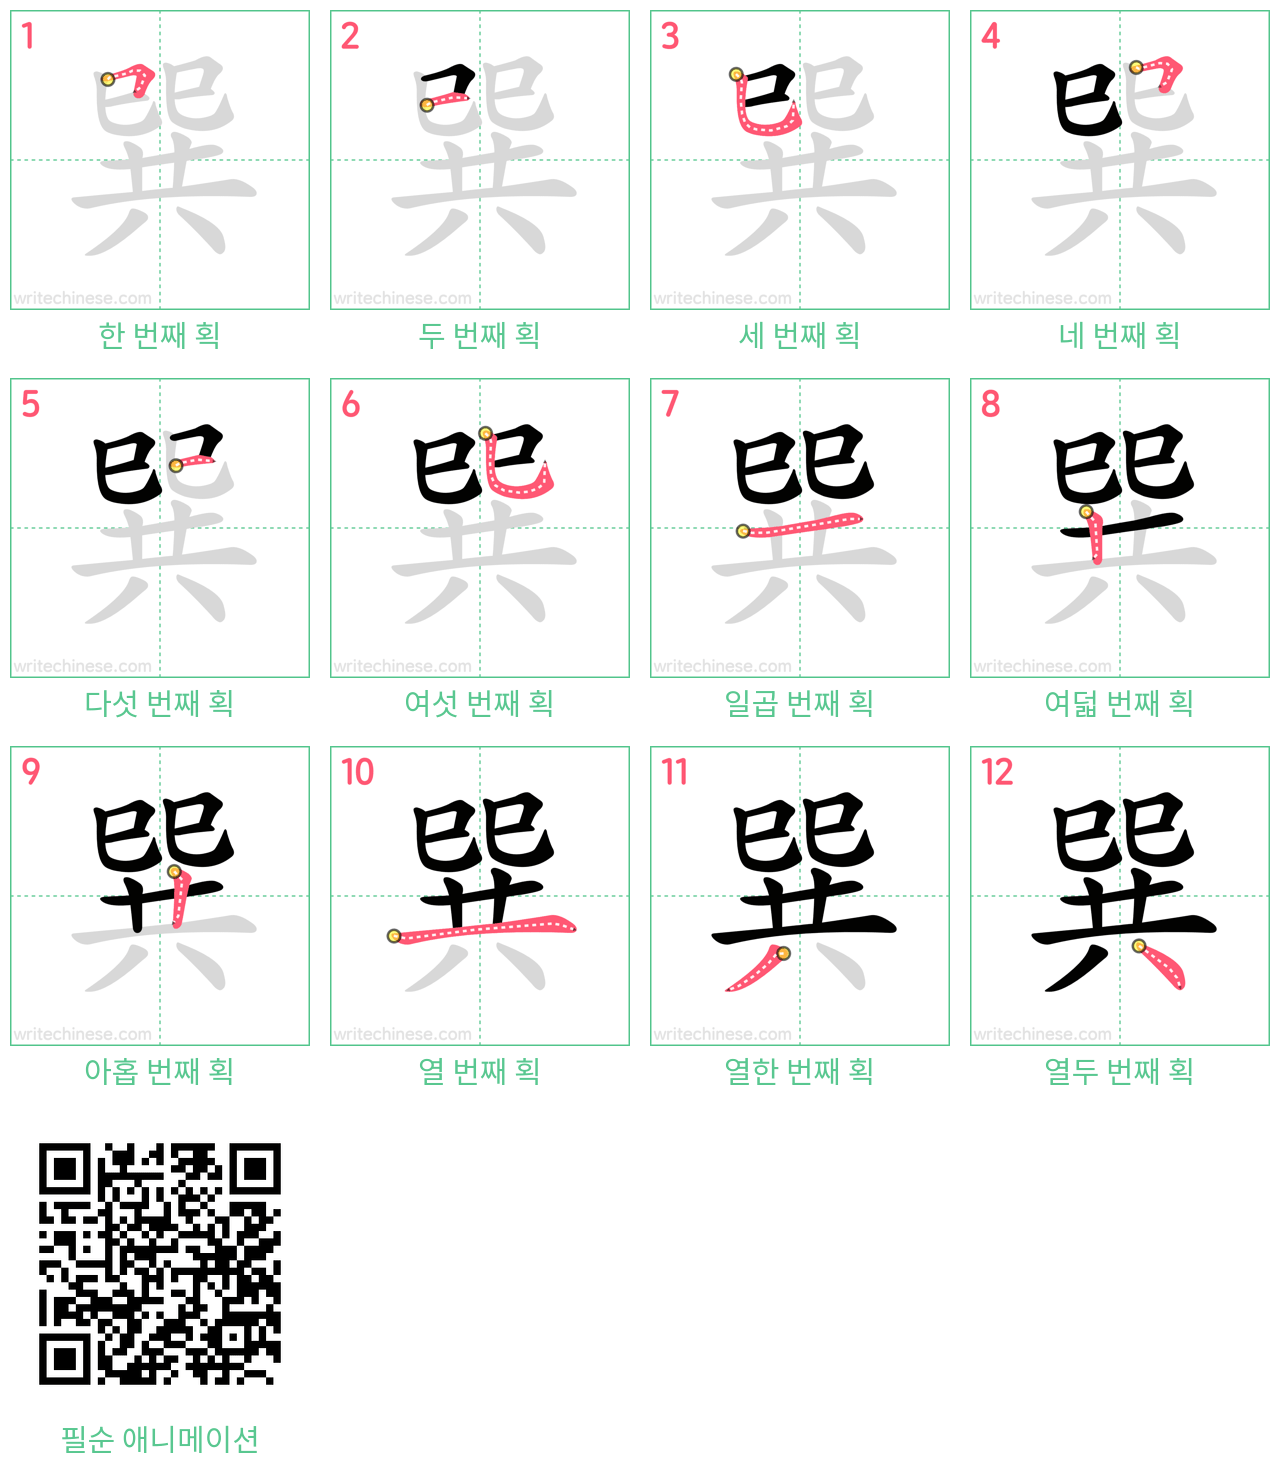 巽 step-by-step stroke order diagrams